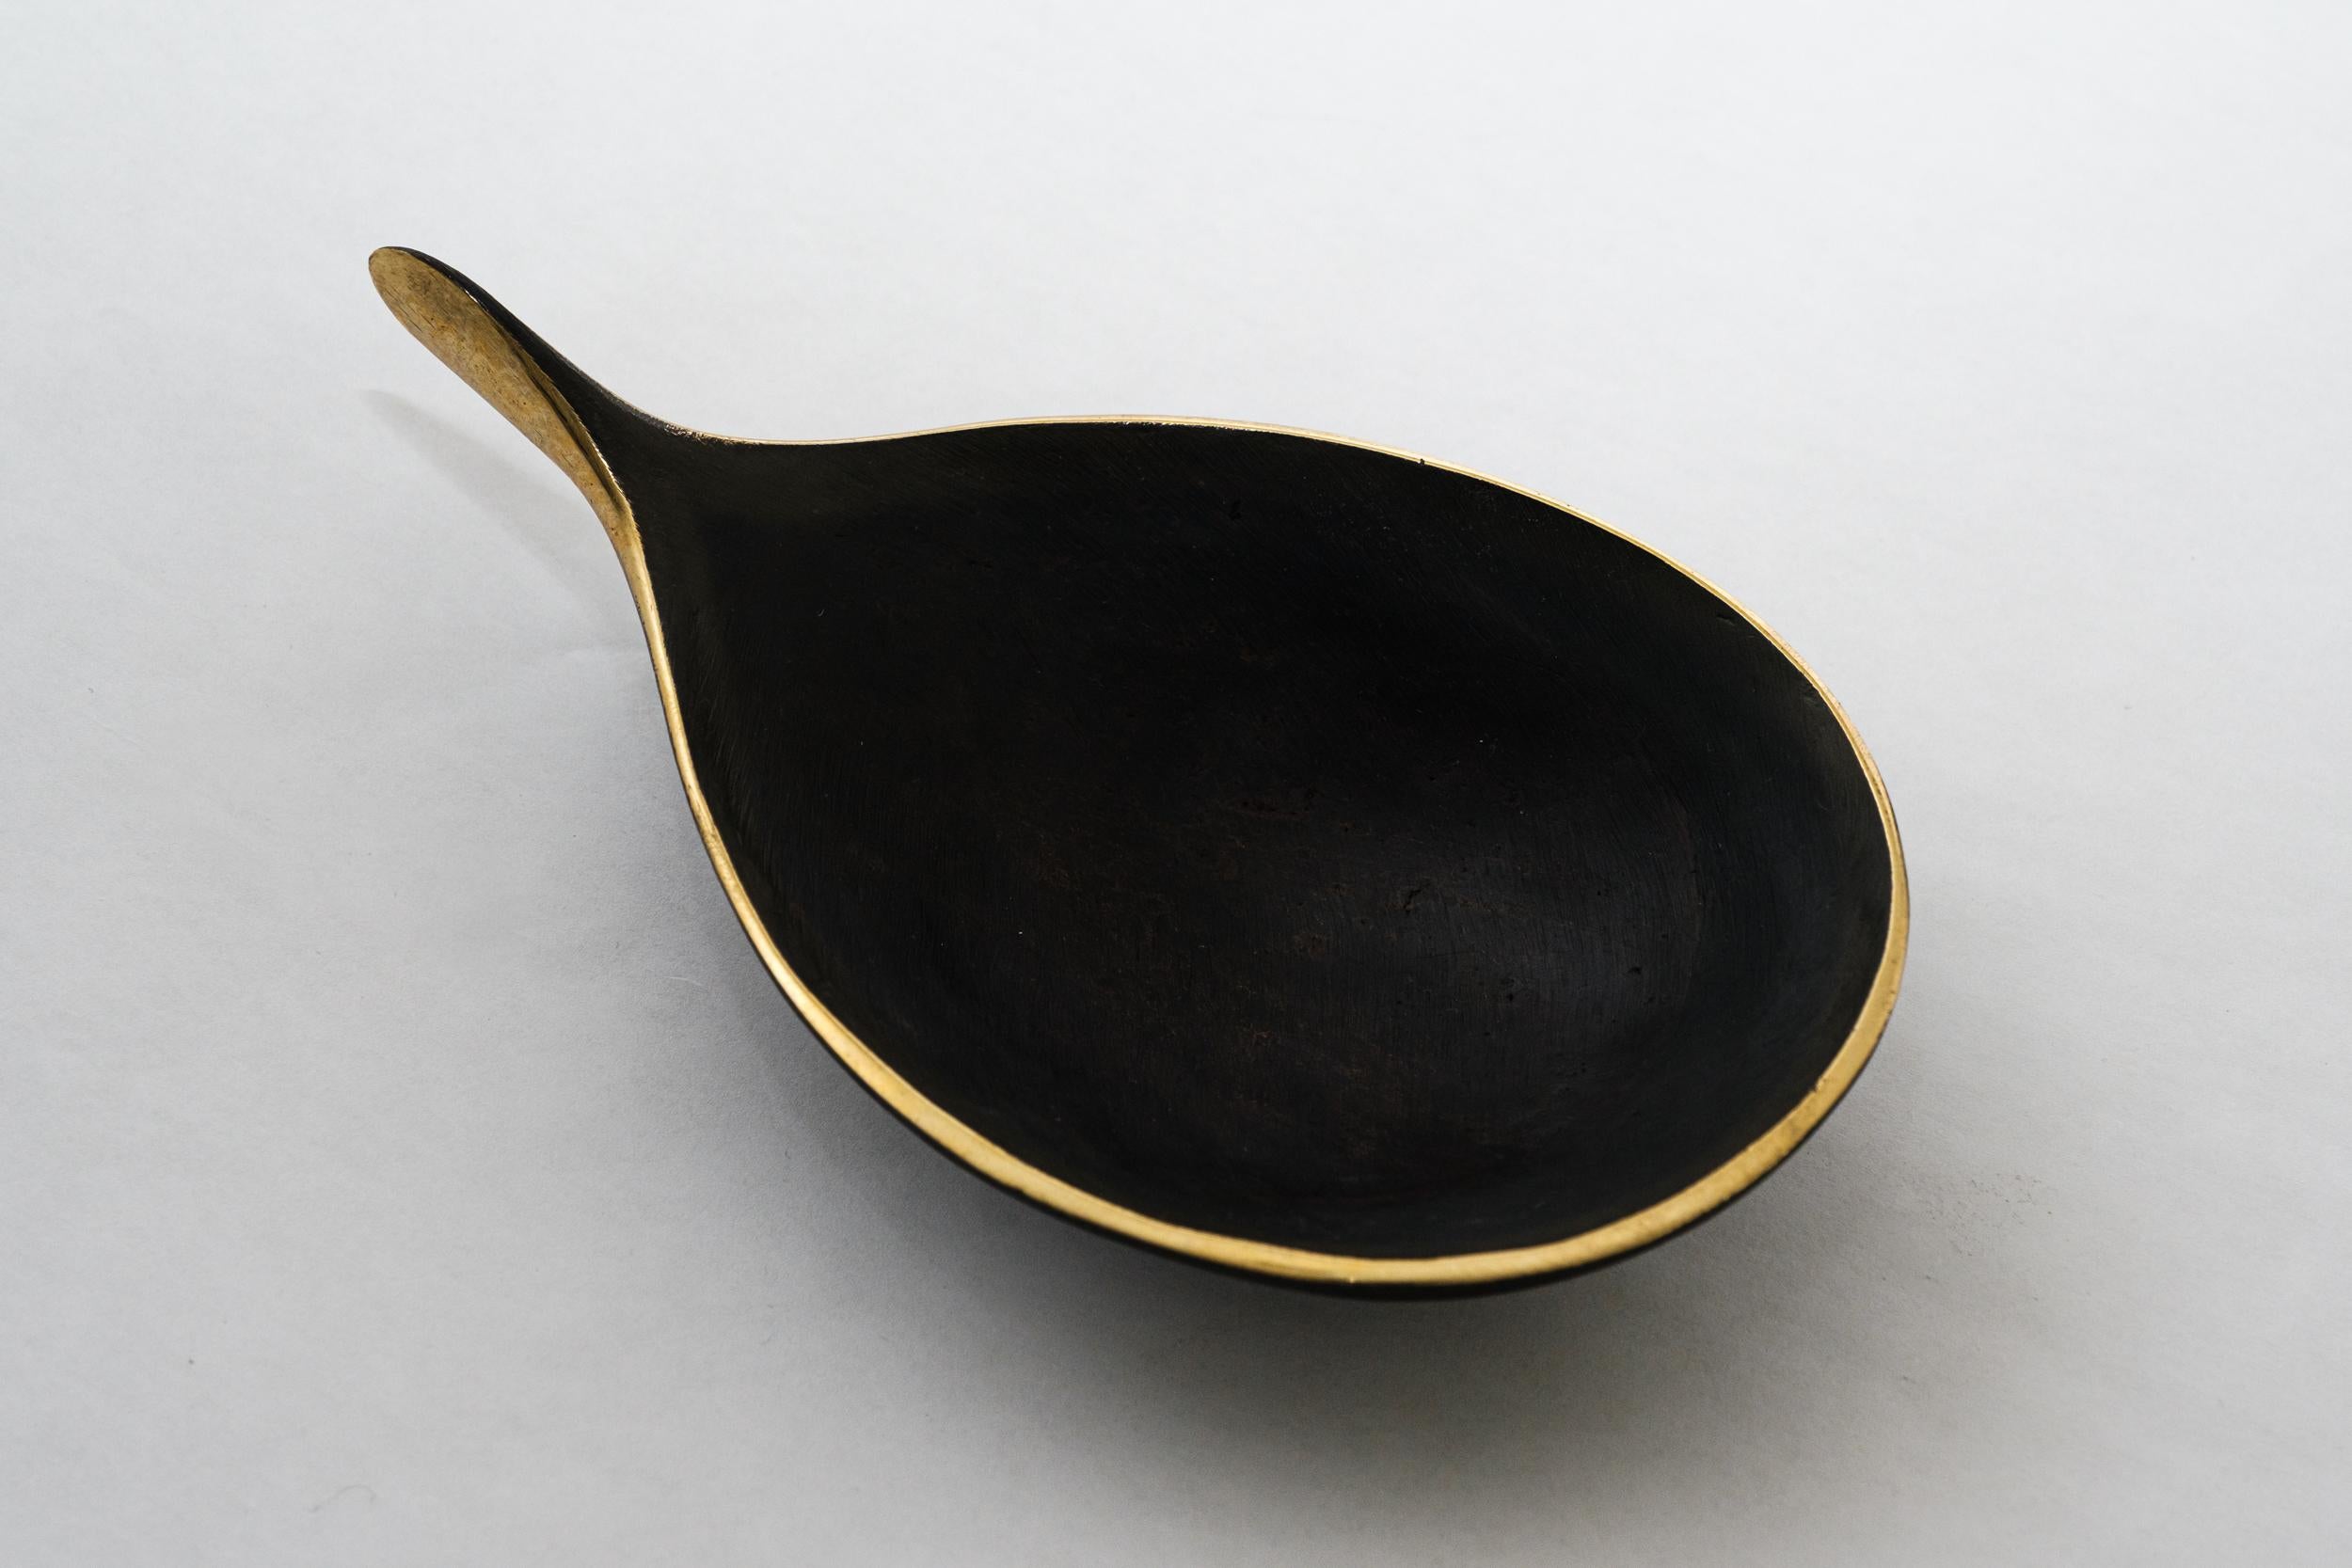 Carl Auböck Modèle #4208 bol en laiton patiné. Conçu dans les années 1950, ce bol viennois sculptural et incroyablement raffiné est réalisé en laiton poli avec une patine foncée. Conçu à l'origine pour servir de cendrier, ce récipient décoratif peut